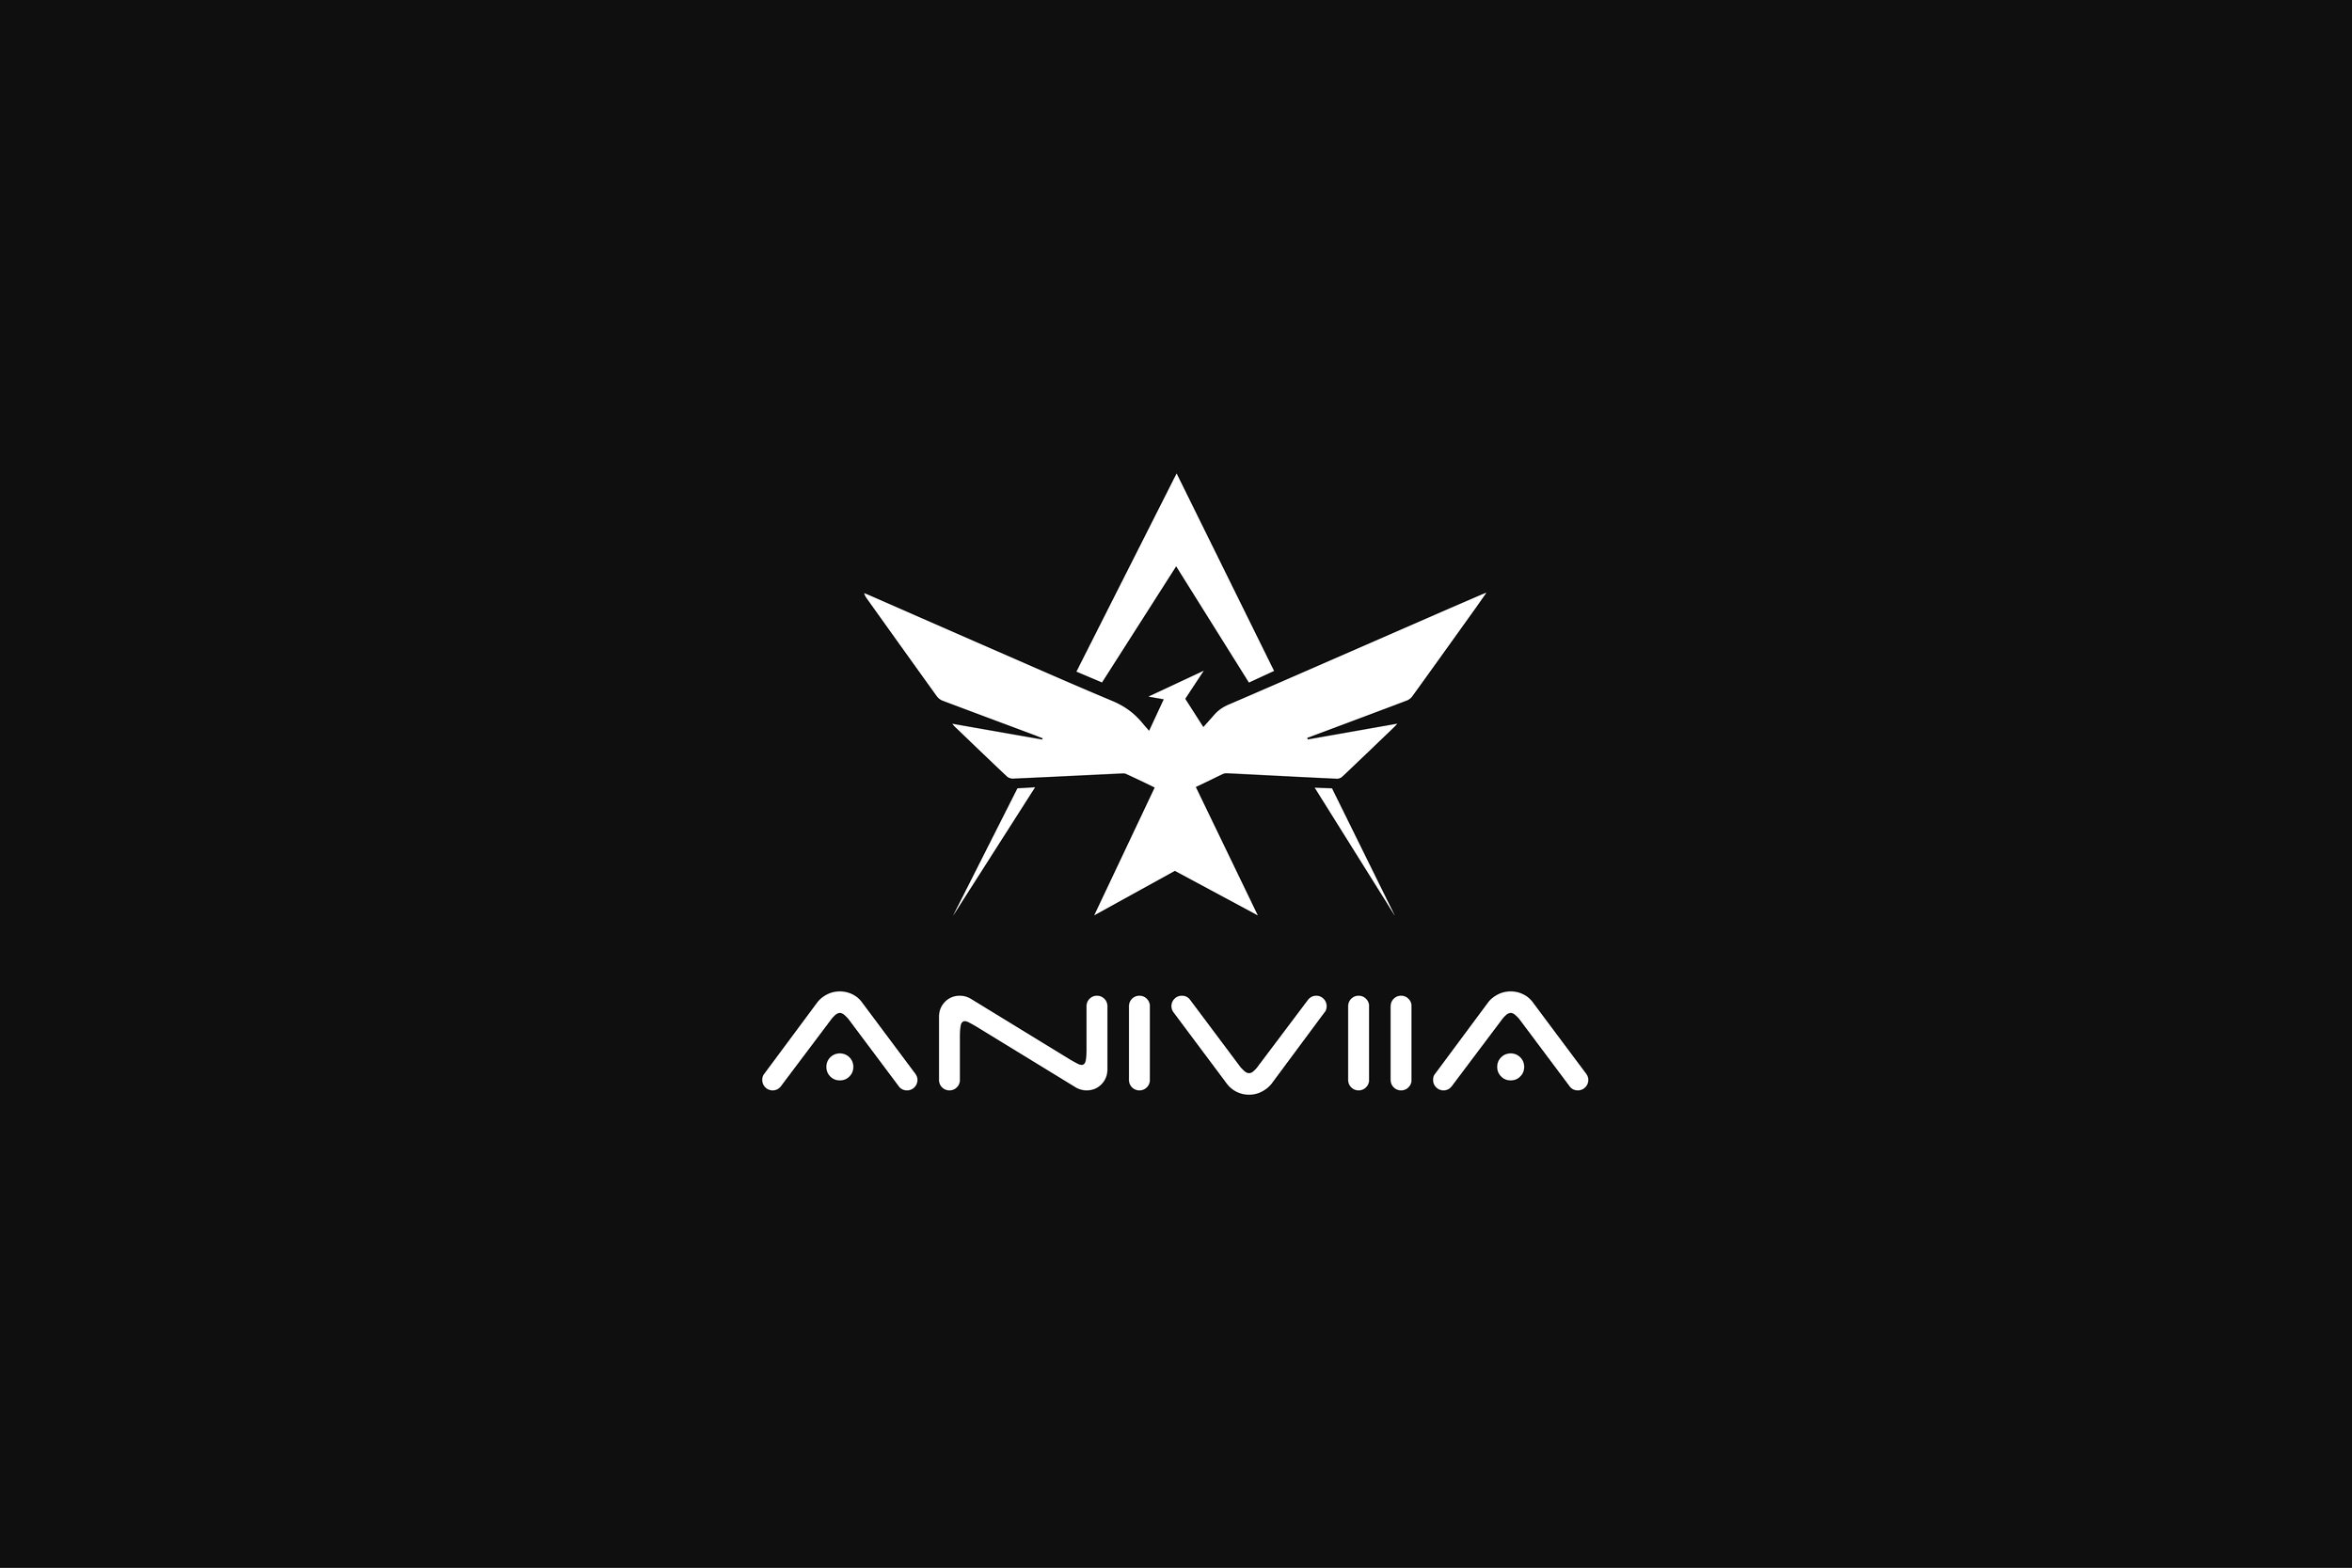 Aniviia2_jpeg.jpg